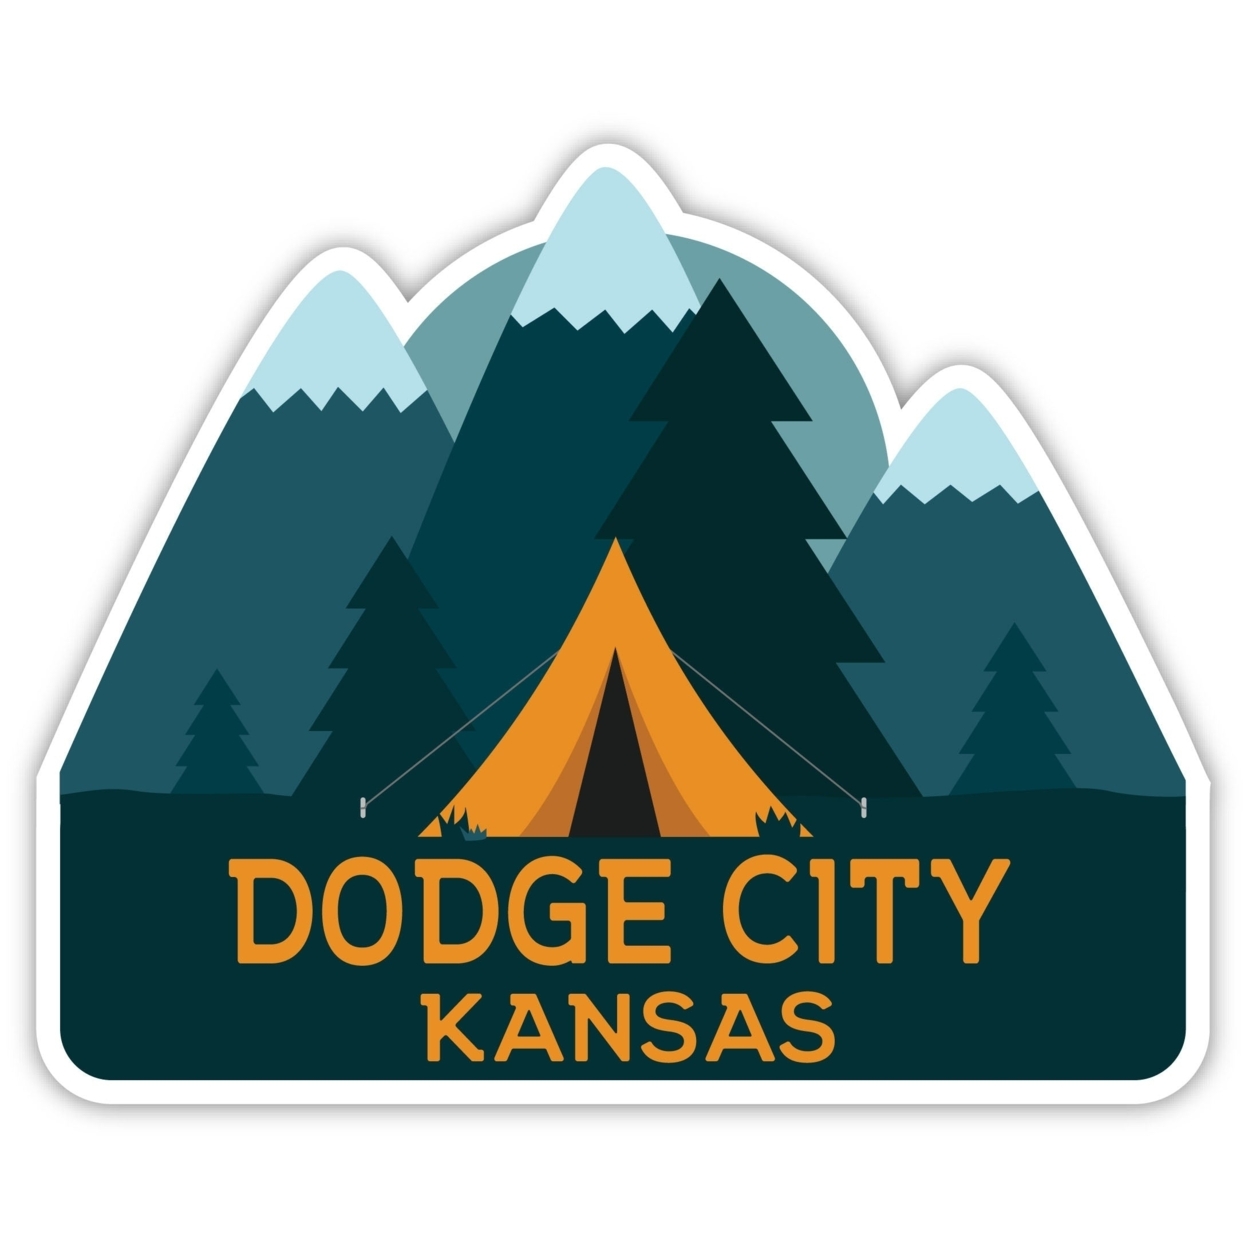 Dodge City Kansas Souvenir Decorative Stickers (Choose Theme And Size) - Single Unit, 10-Inch, Tent